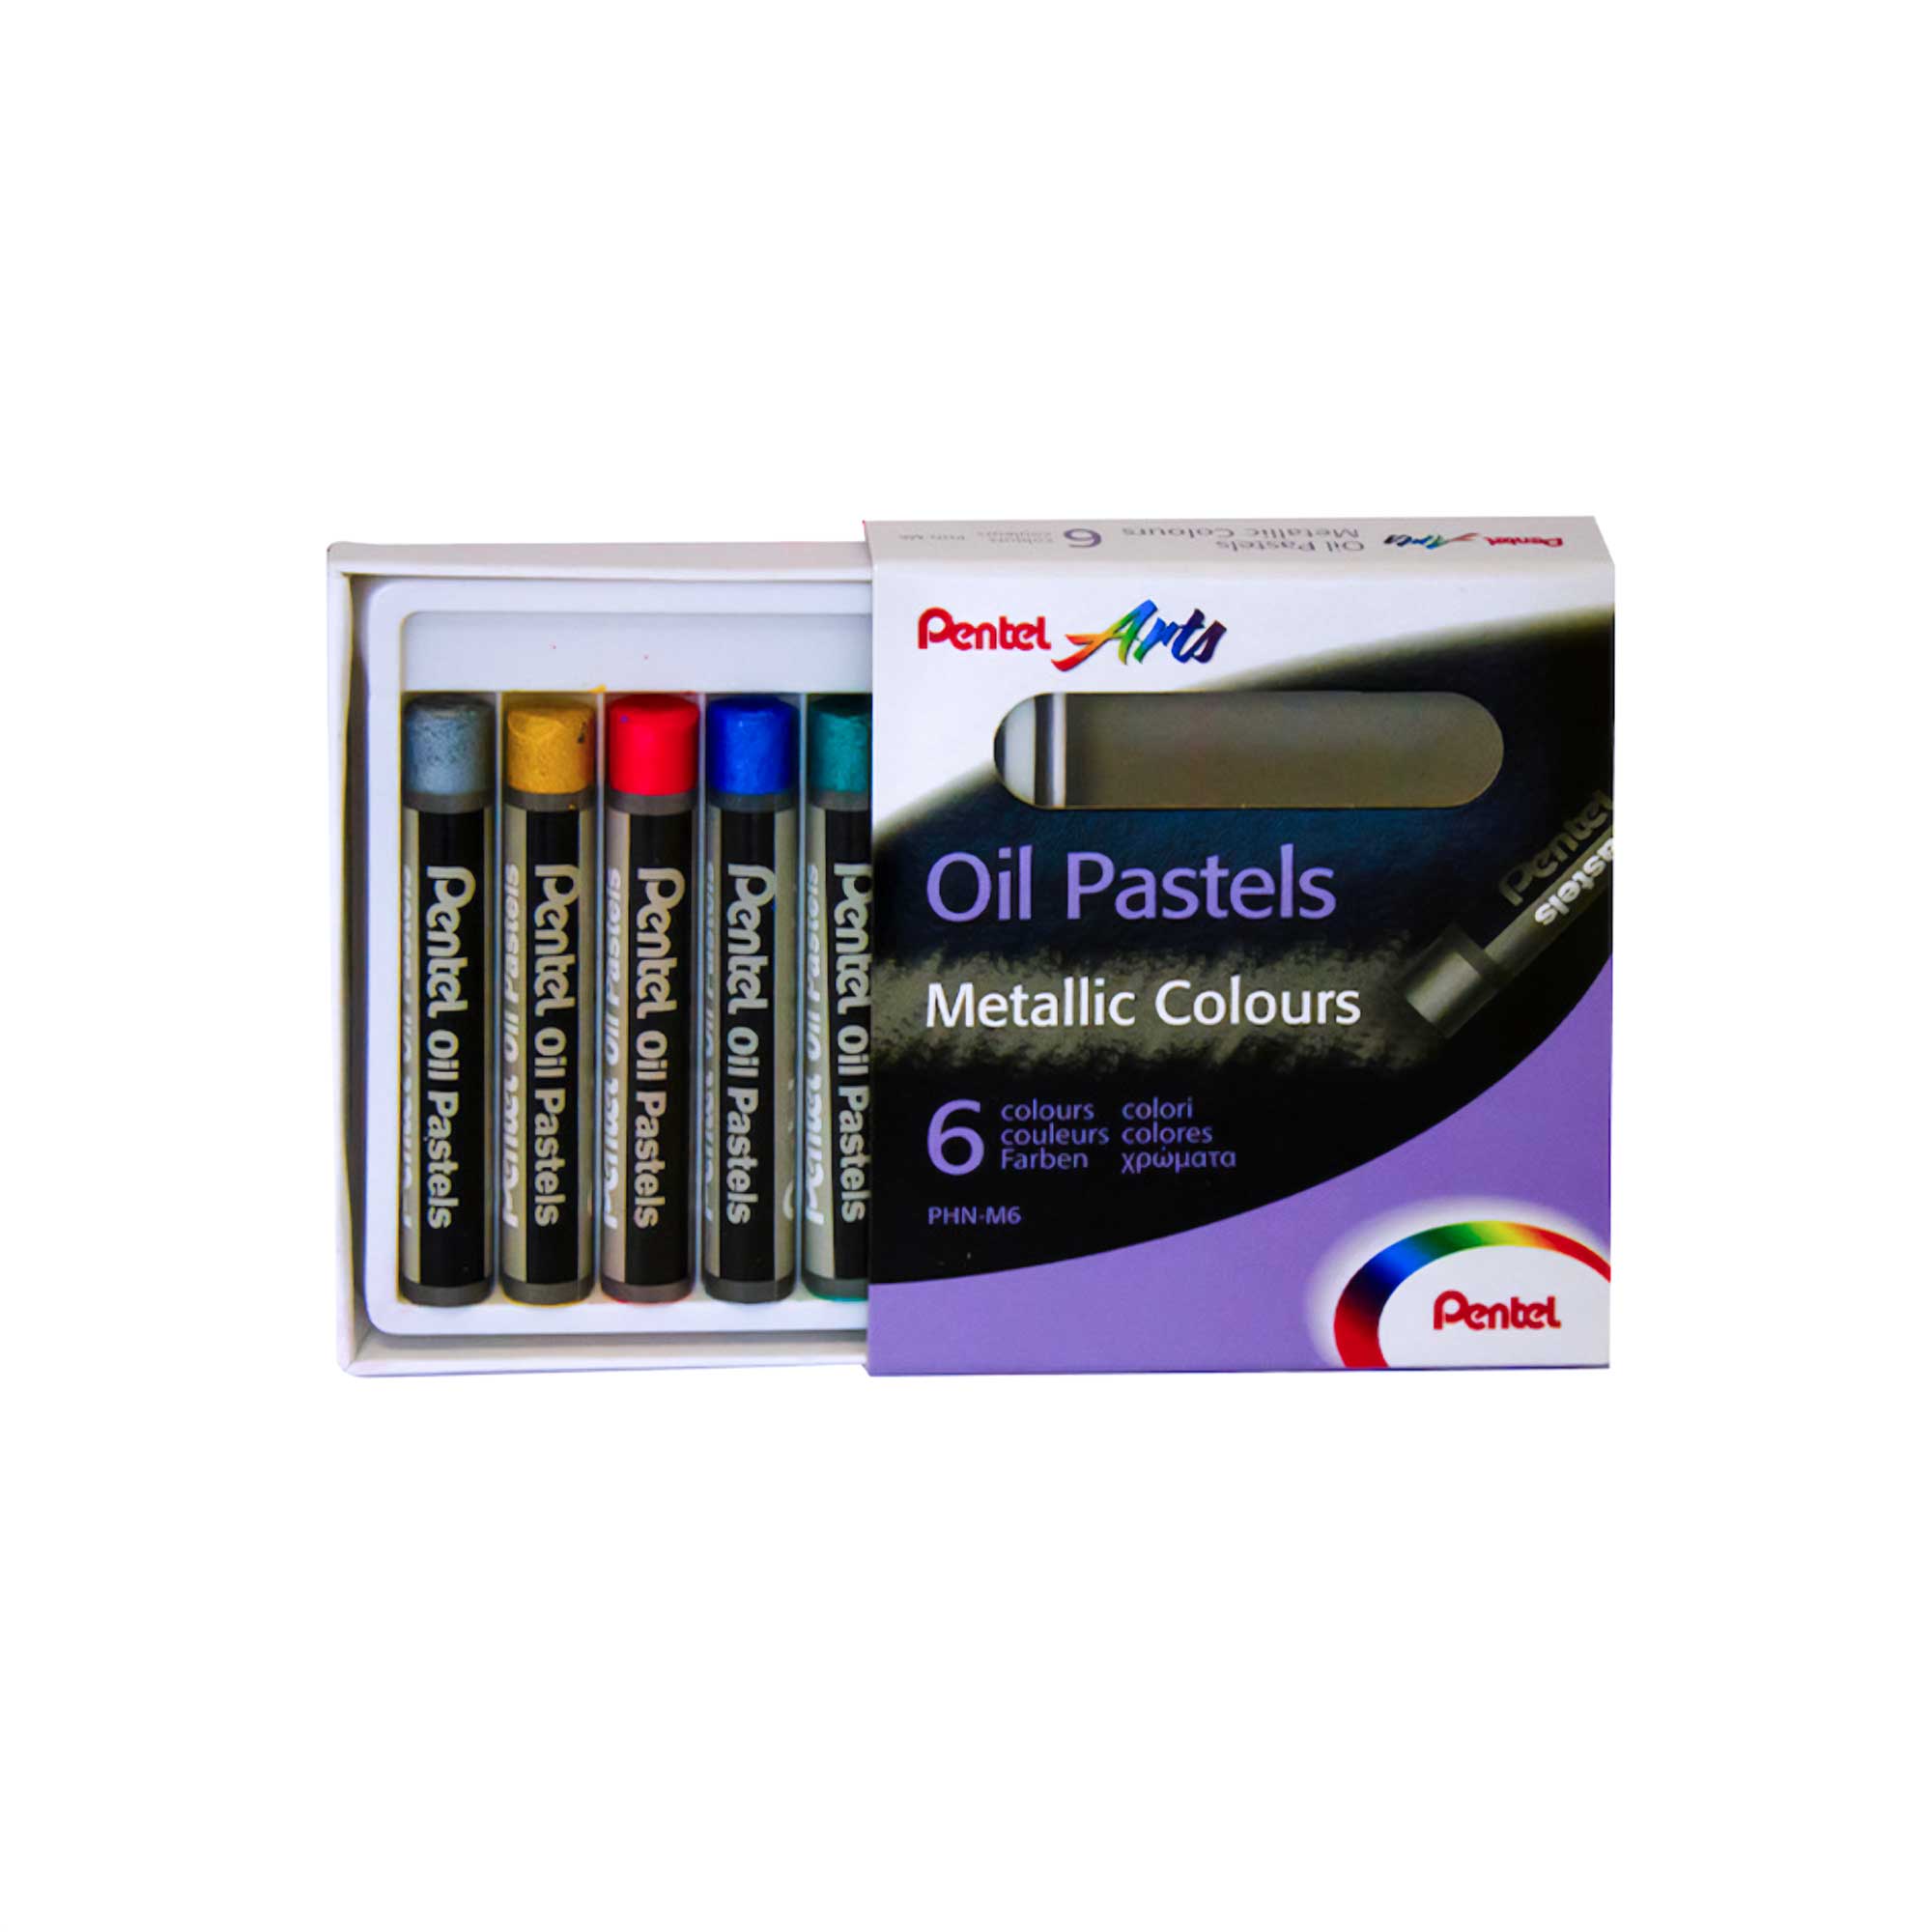 Pentel Arts Oil Pastel Sets Metallic Colours